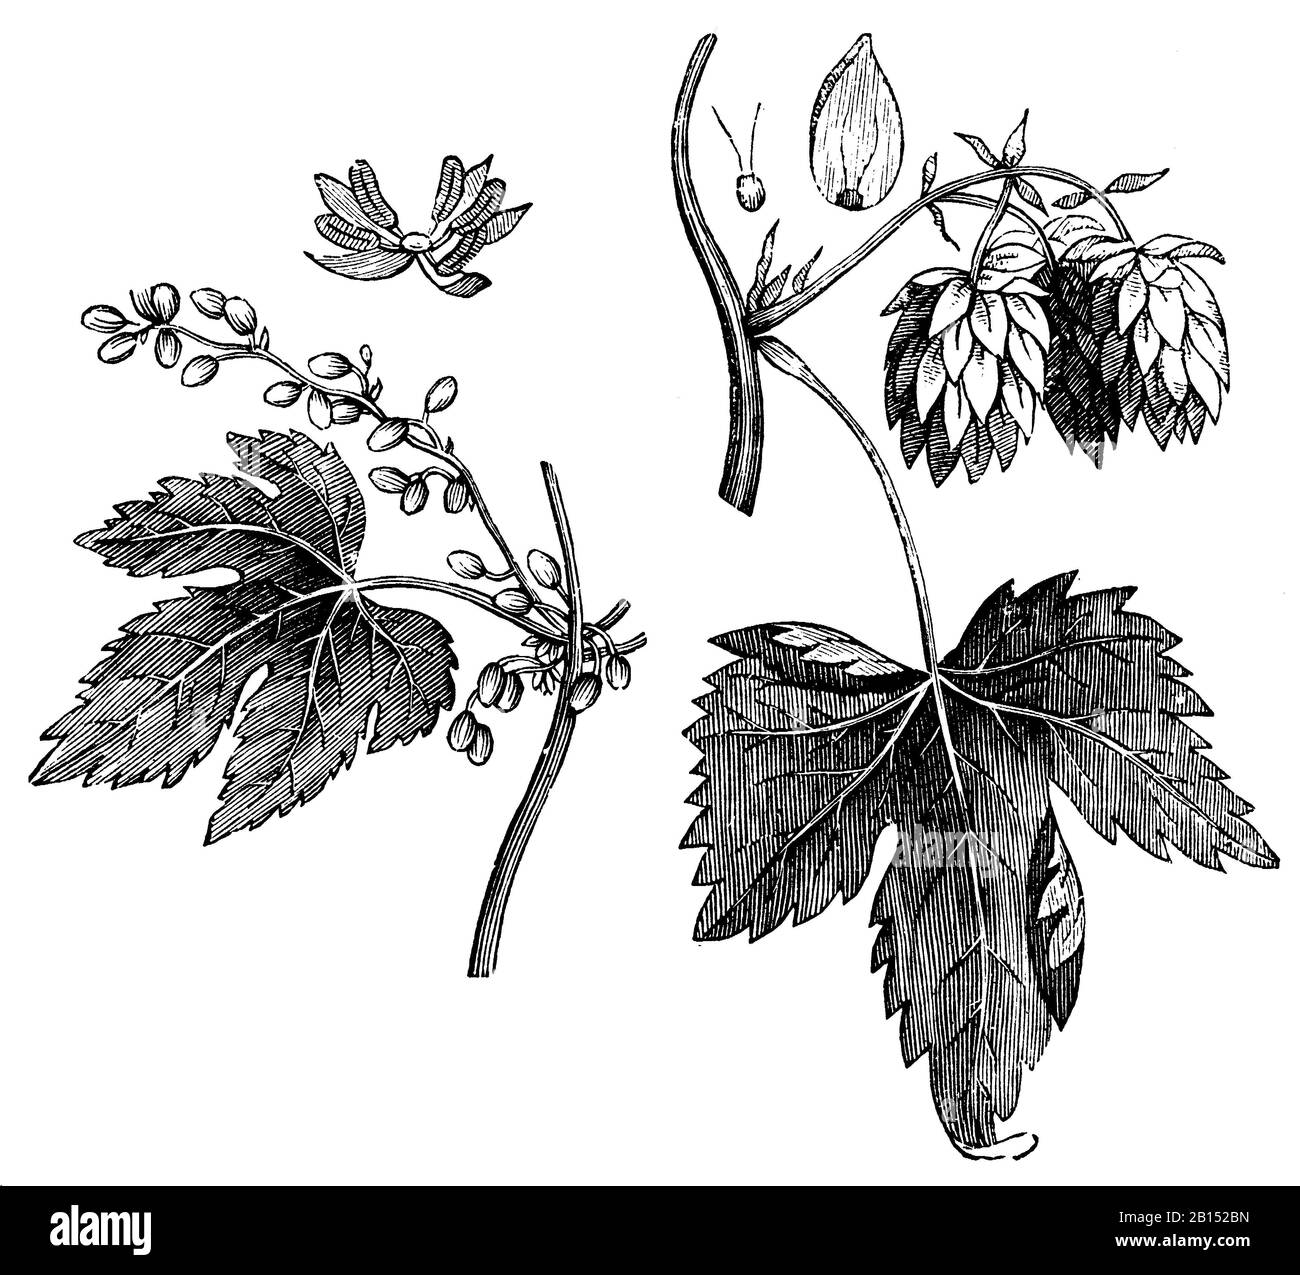 Luppolo o luppolo comune, Humulus lupulus, Hopfen: Blüte und Frucht, houmblon ou houmblon gripant, anonym (libro di storia naturale, 1899) Foto Stock